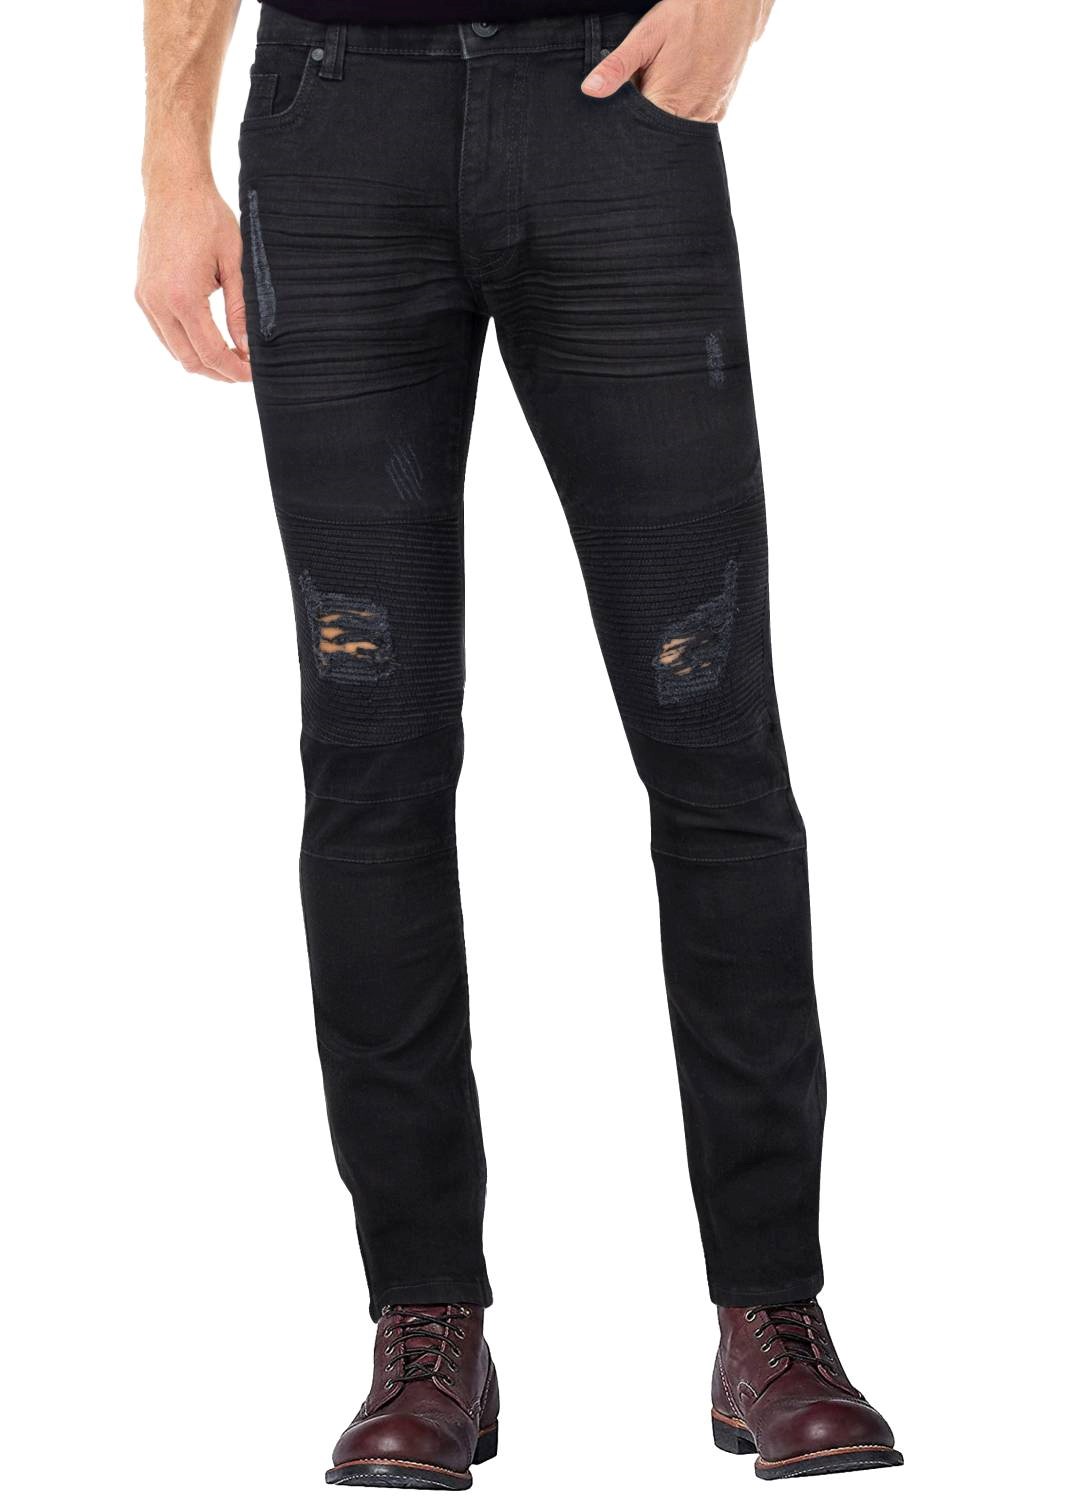 RAW X Men's Slim Fit Skinny Biker Jean, Comfy Flex Stretch Moto Wash Rip Distressed Denim Jeans Pants - image 1 of 8